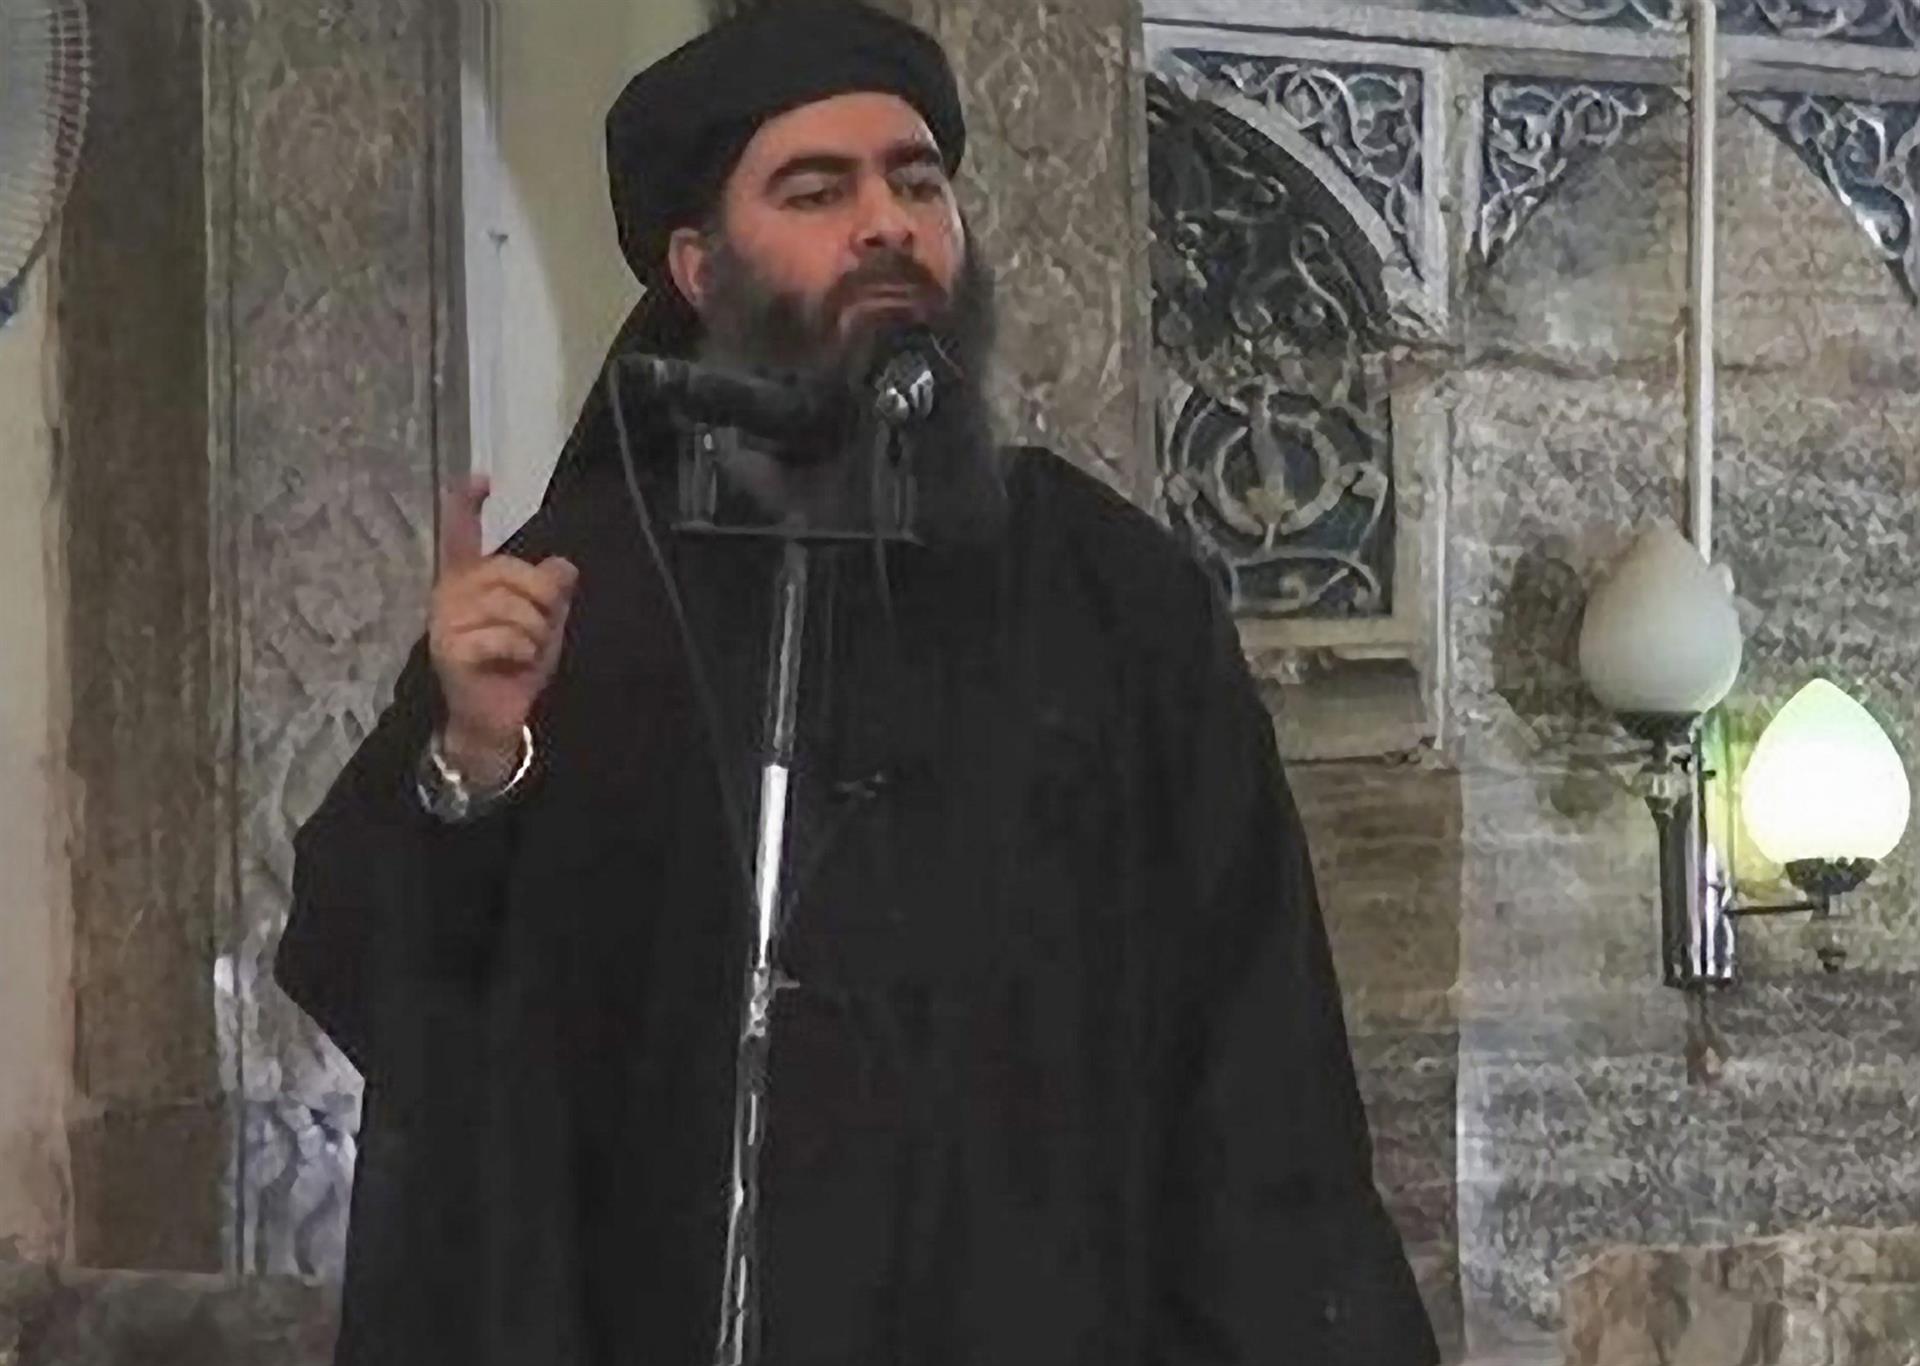 Fotograma de archivo de un vídeo cedido por el grupo Estado Islámico (EI) del califa del EI, Abu Bakr al Bagdadi al Quraishi al Husaini, pronunciando un discurso en una localización sin especificar. EFE/Estado Islámico SOLO USO EDITORIAL[SOLO USO EDITORIAL]
